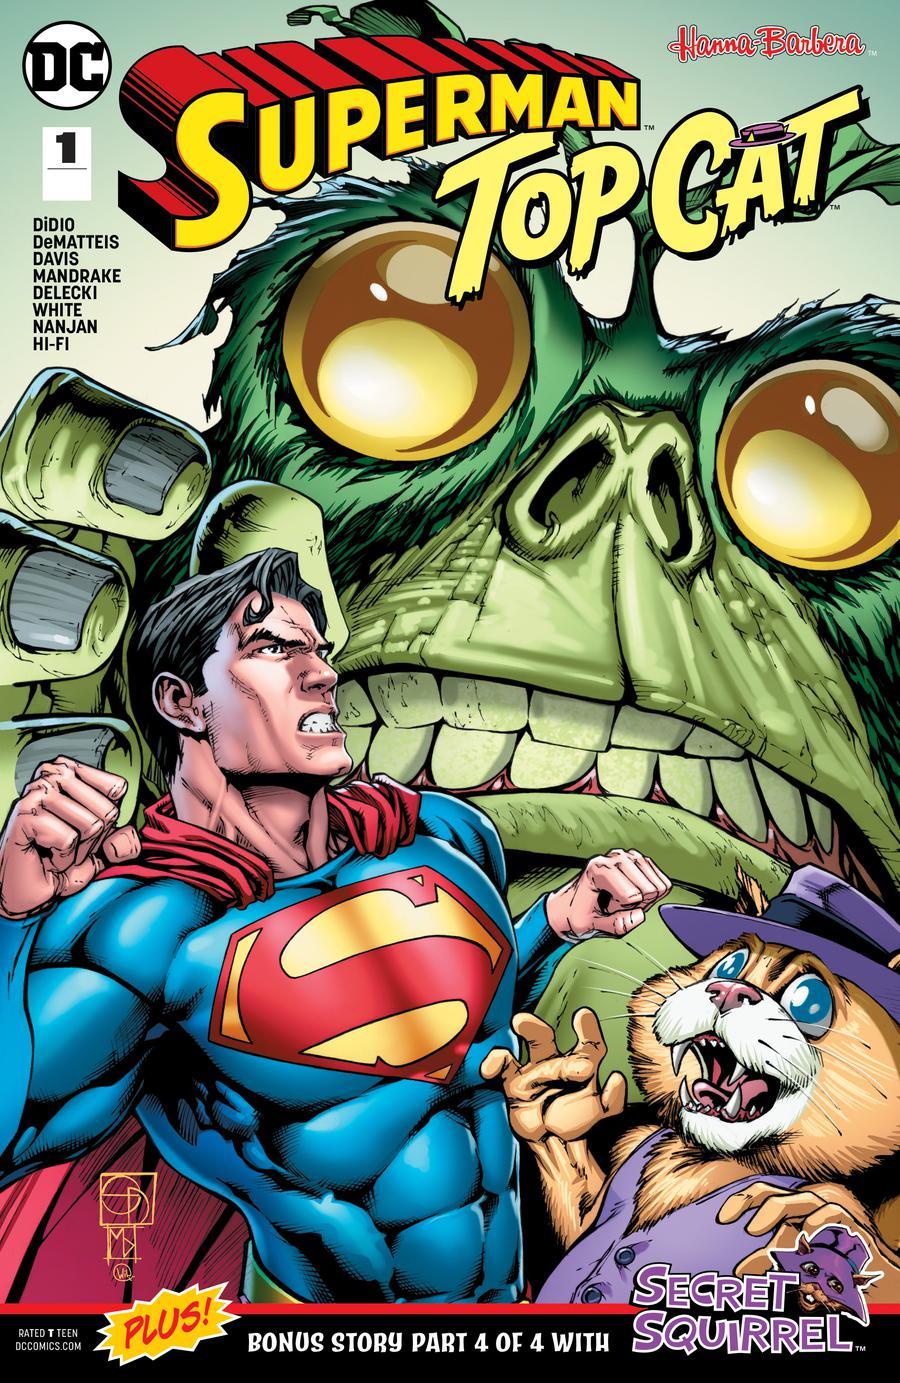 Superman Top Cat Special Vol. 1 #1